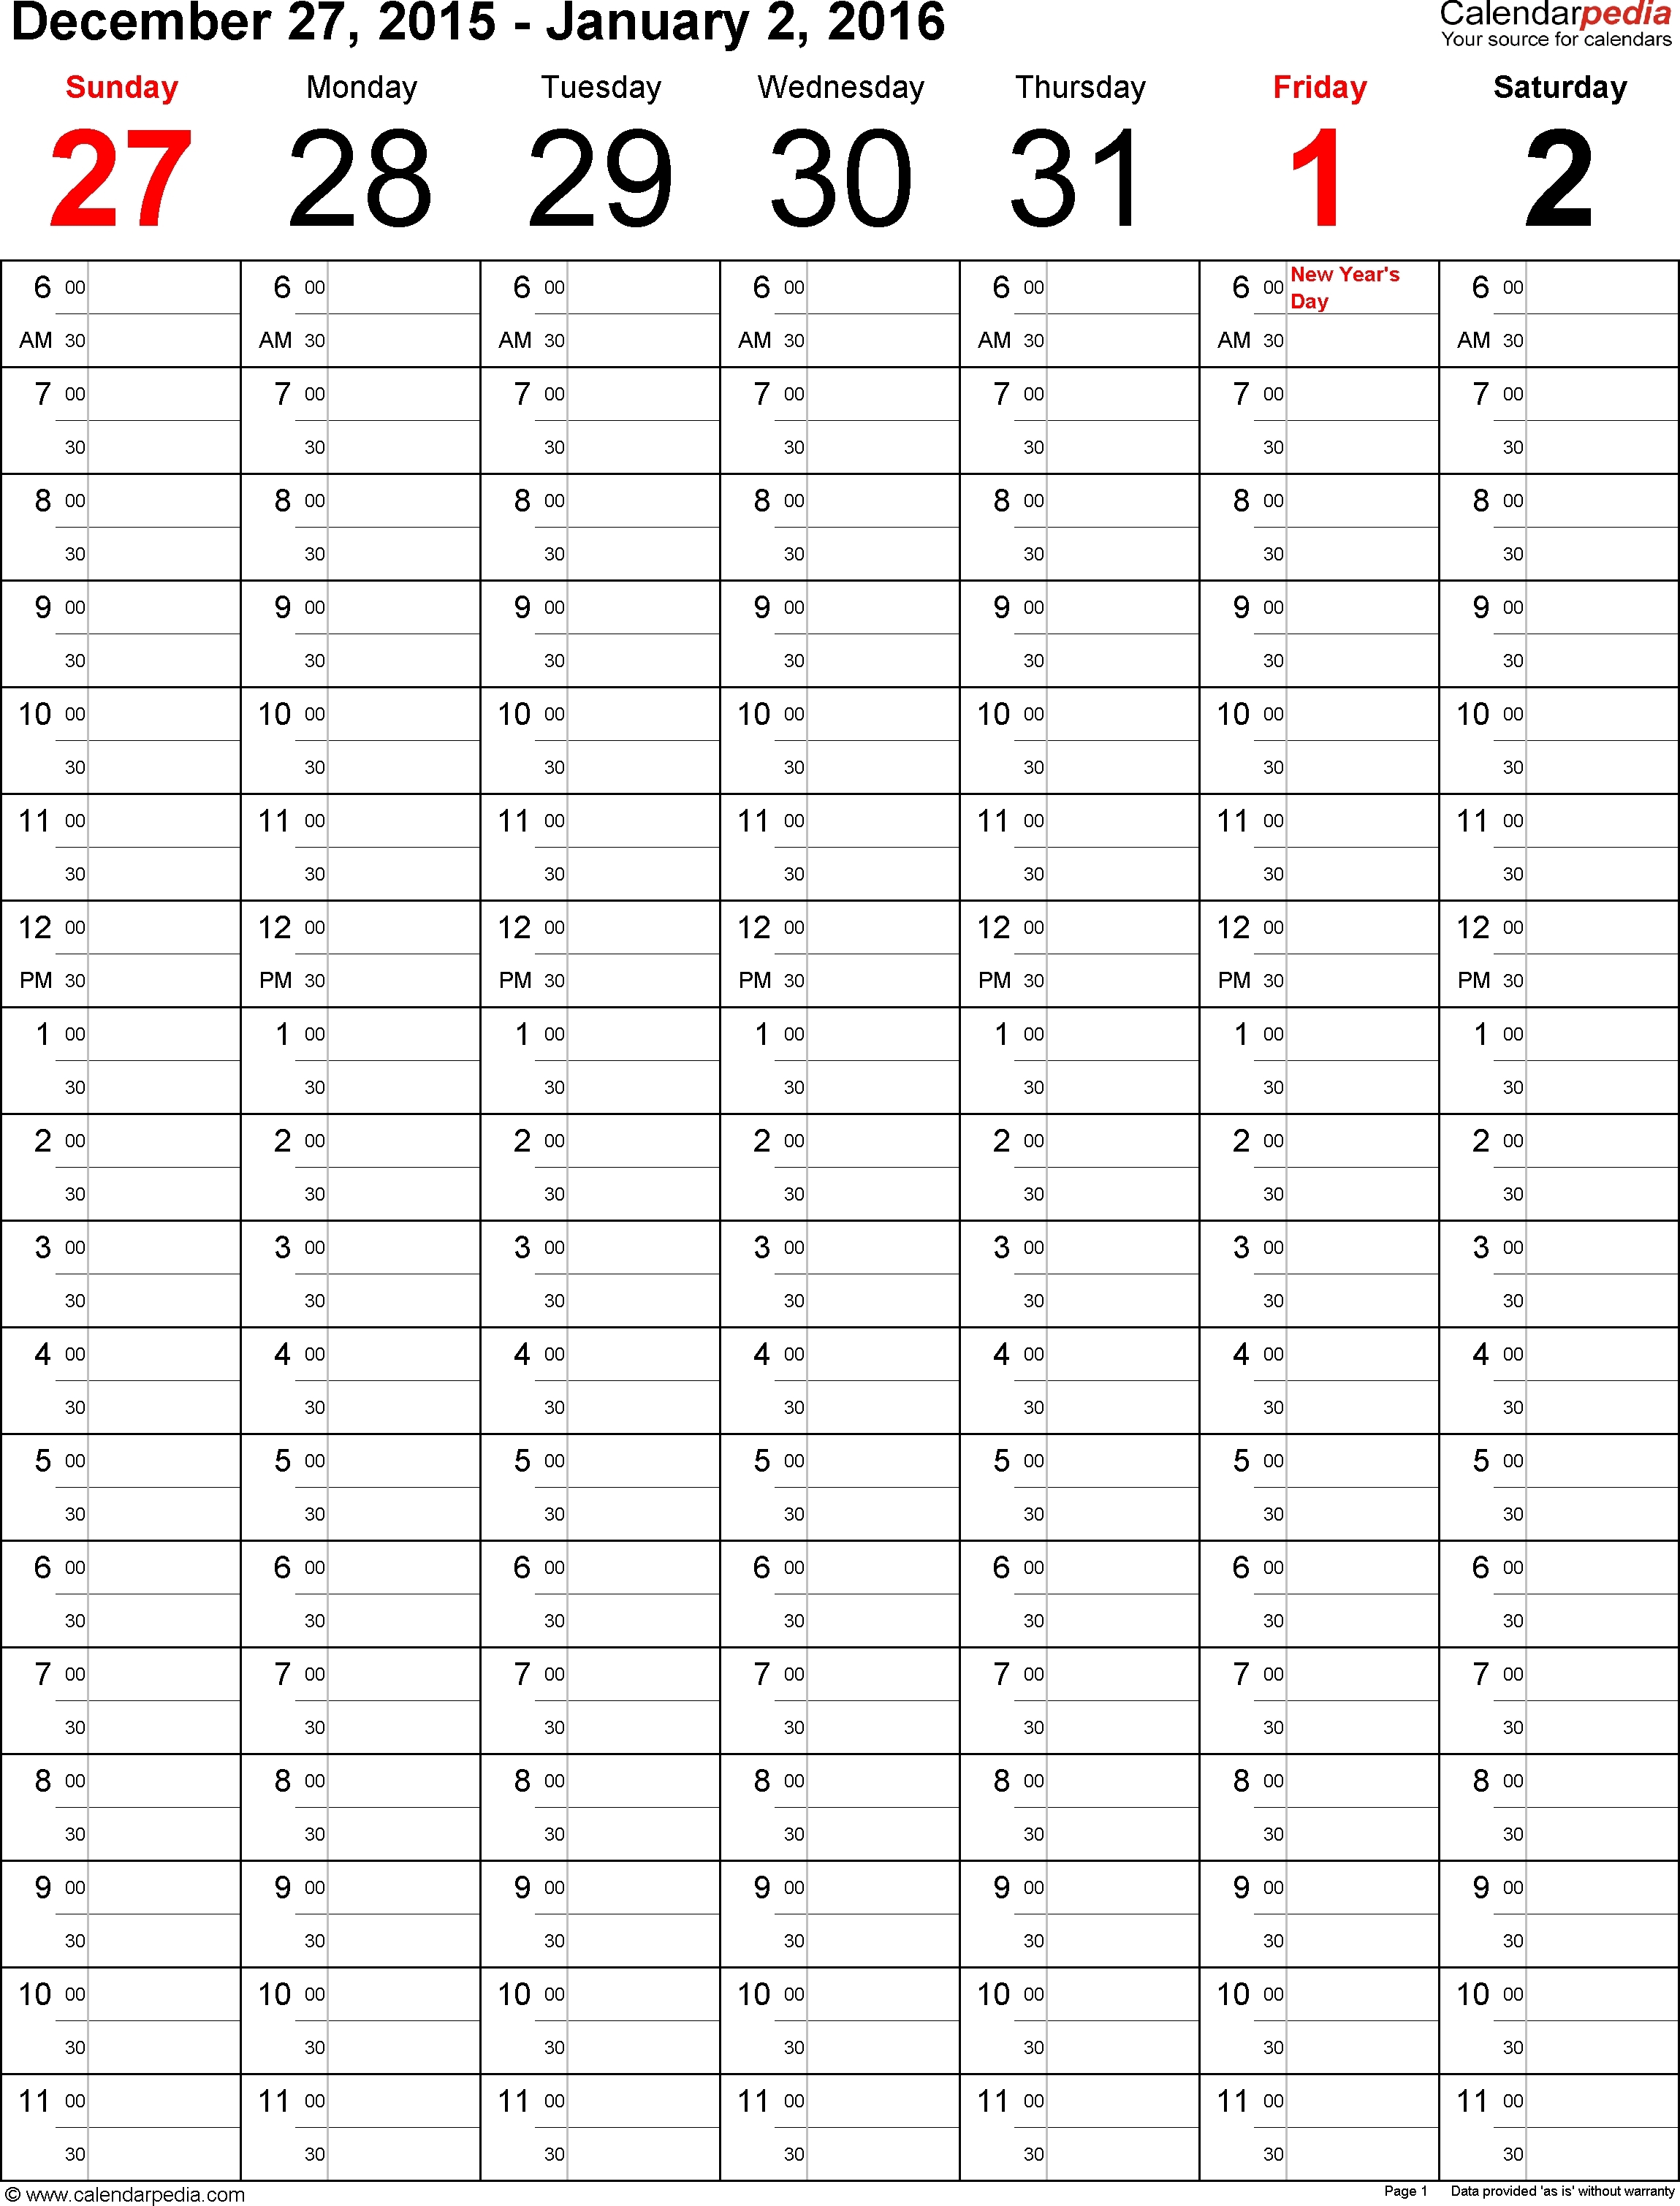 Year Calendar In Weeks Month Calendar Printable